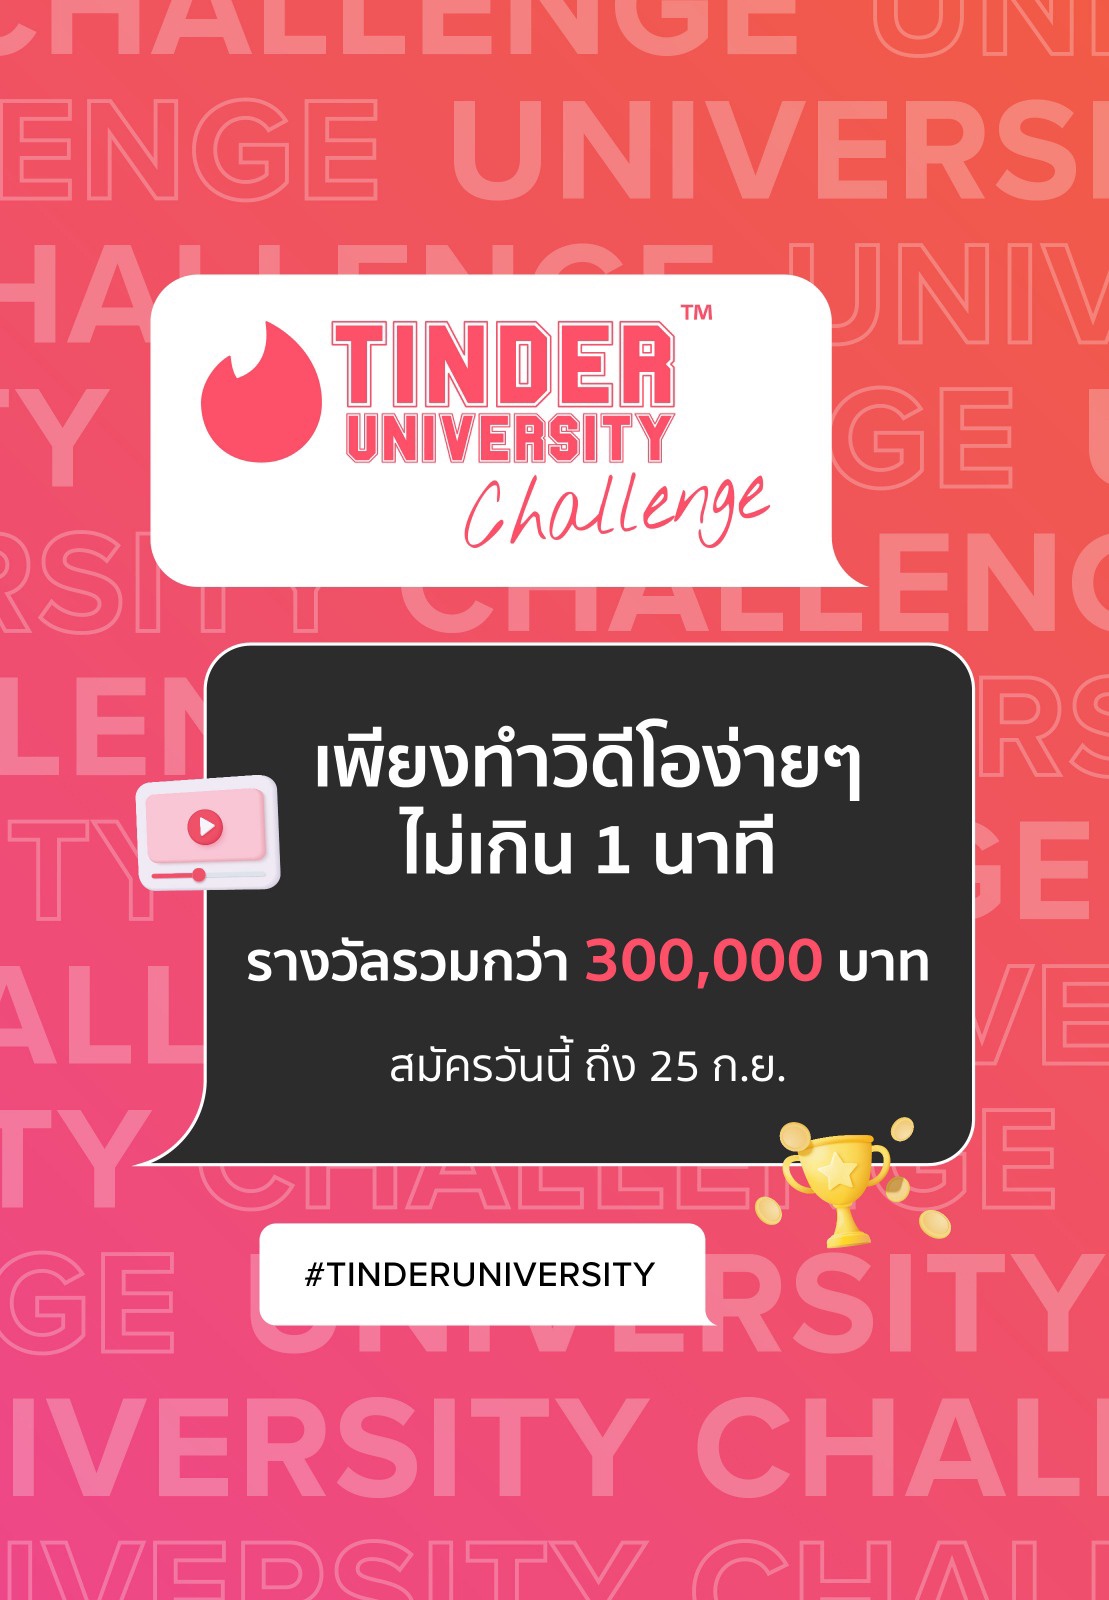 Tinder ชวนวัยรุ่นไทยแชร์เรื่องราวการออกเดทแบบสร้างสรรค์ กับกิจกรรม Tinder University Challenge